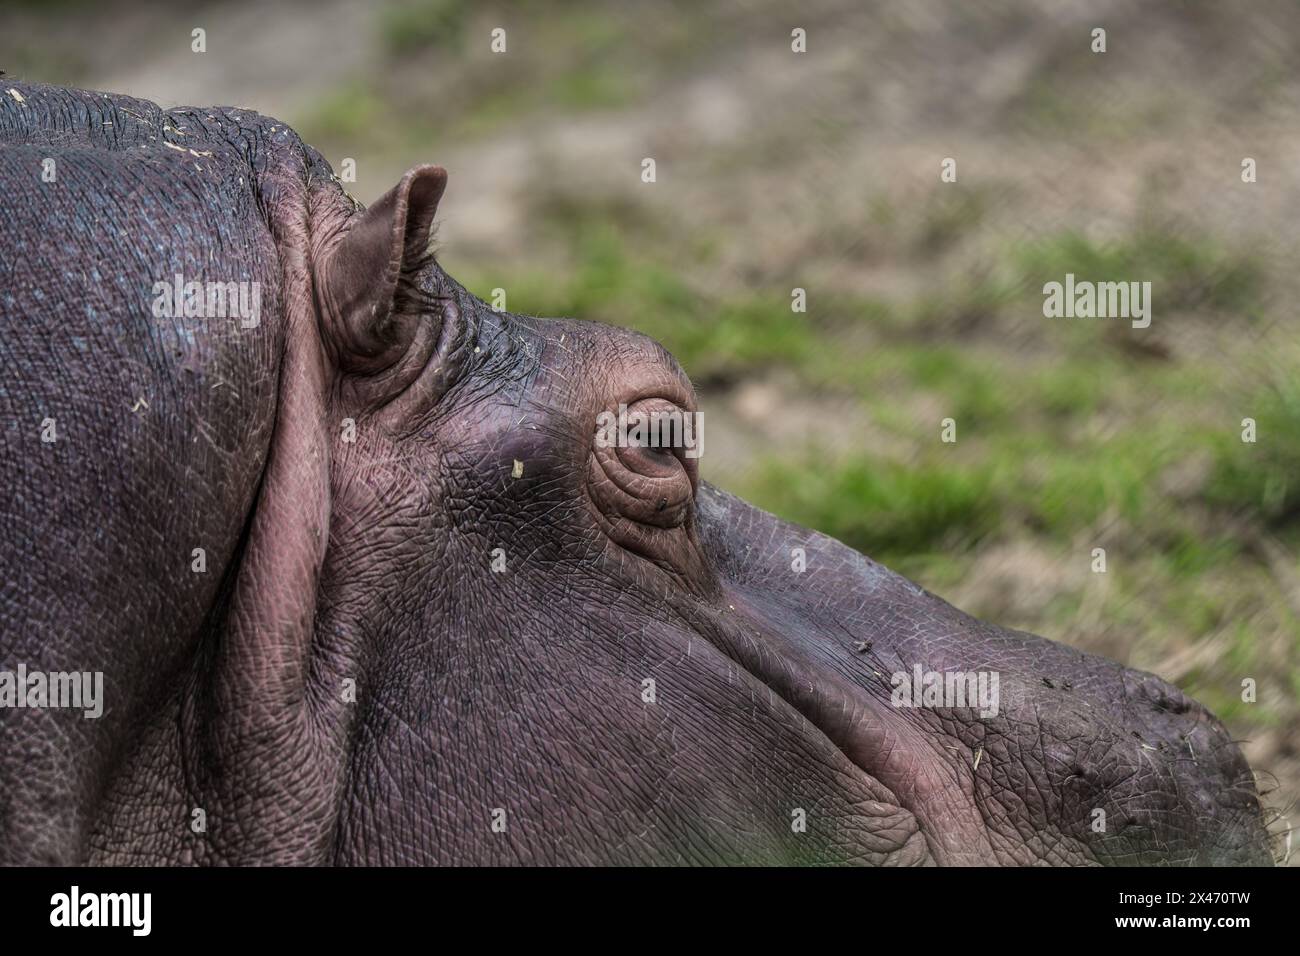 Primo piano dell'occhio di un ippopotamo, evidenziando i dettagli della pelle Foto Stock